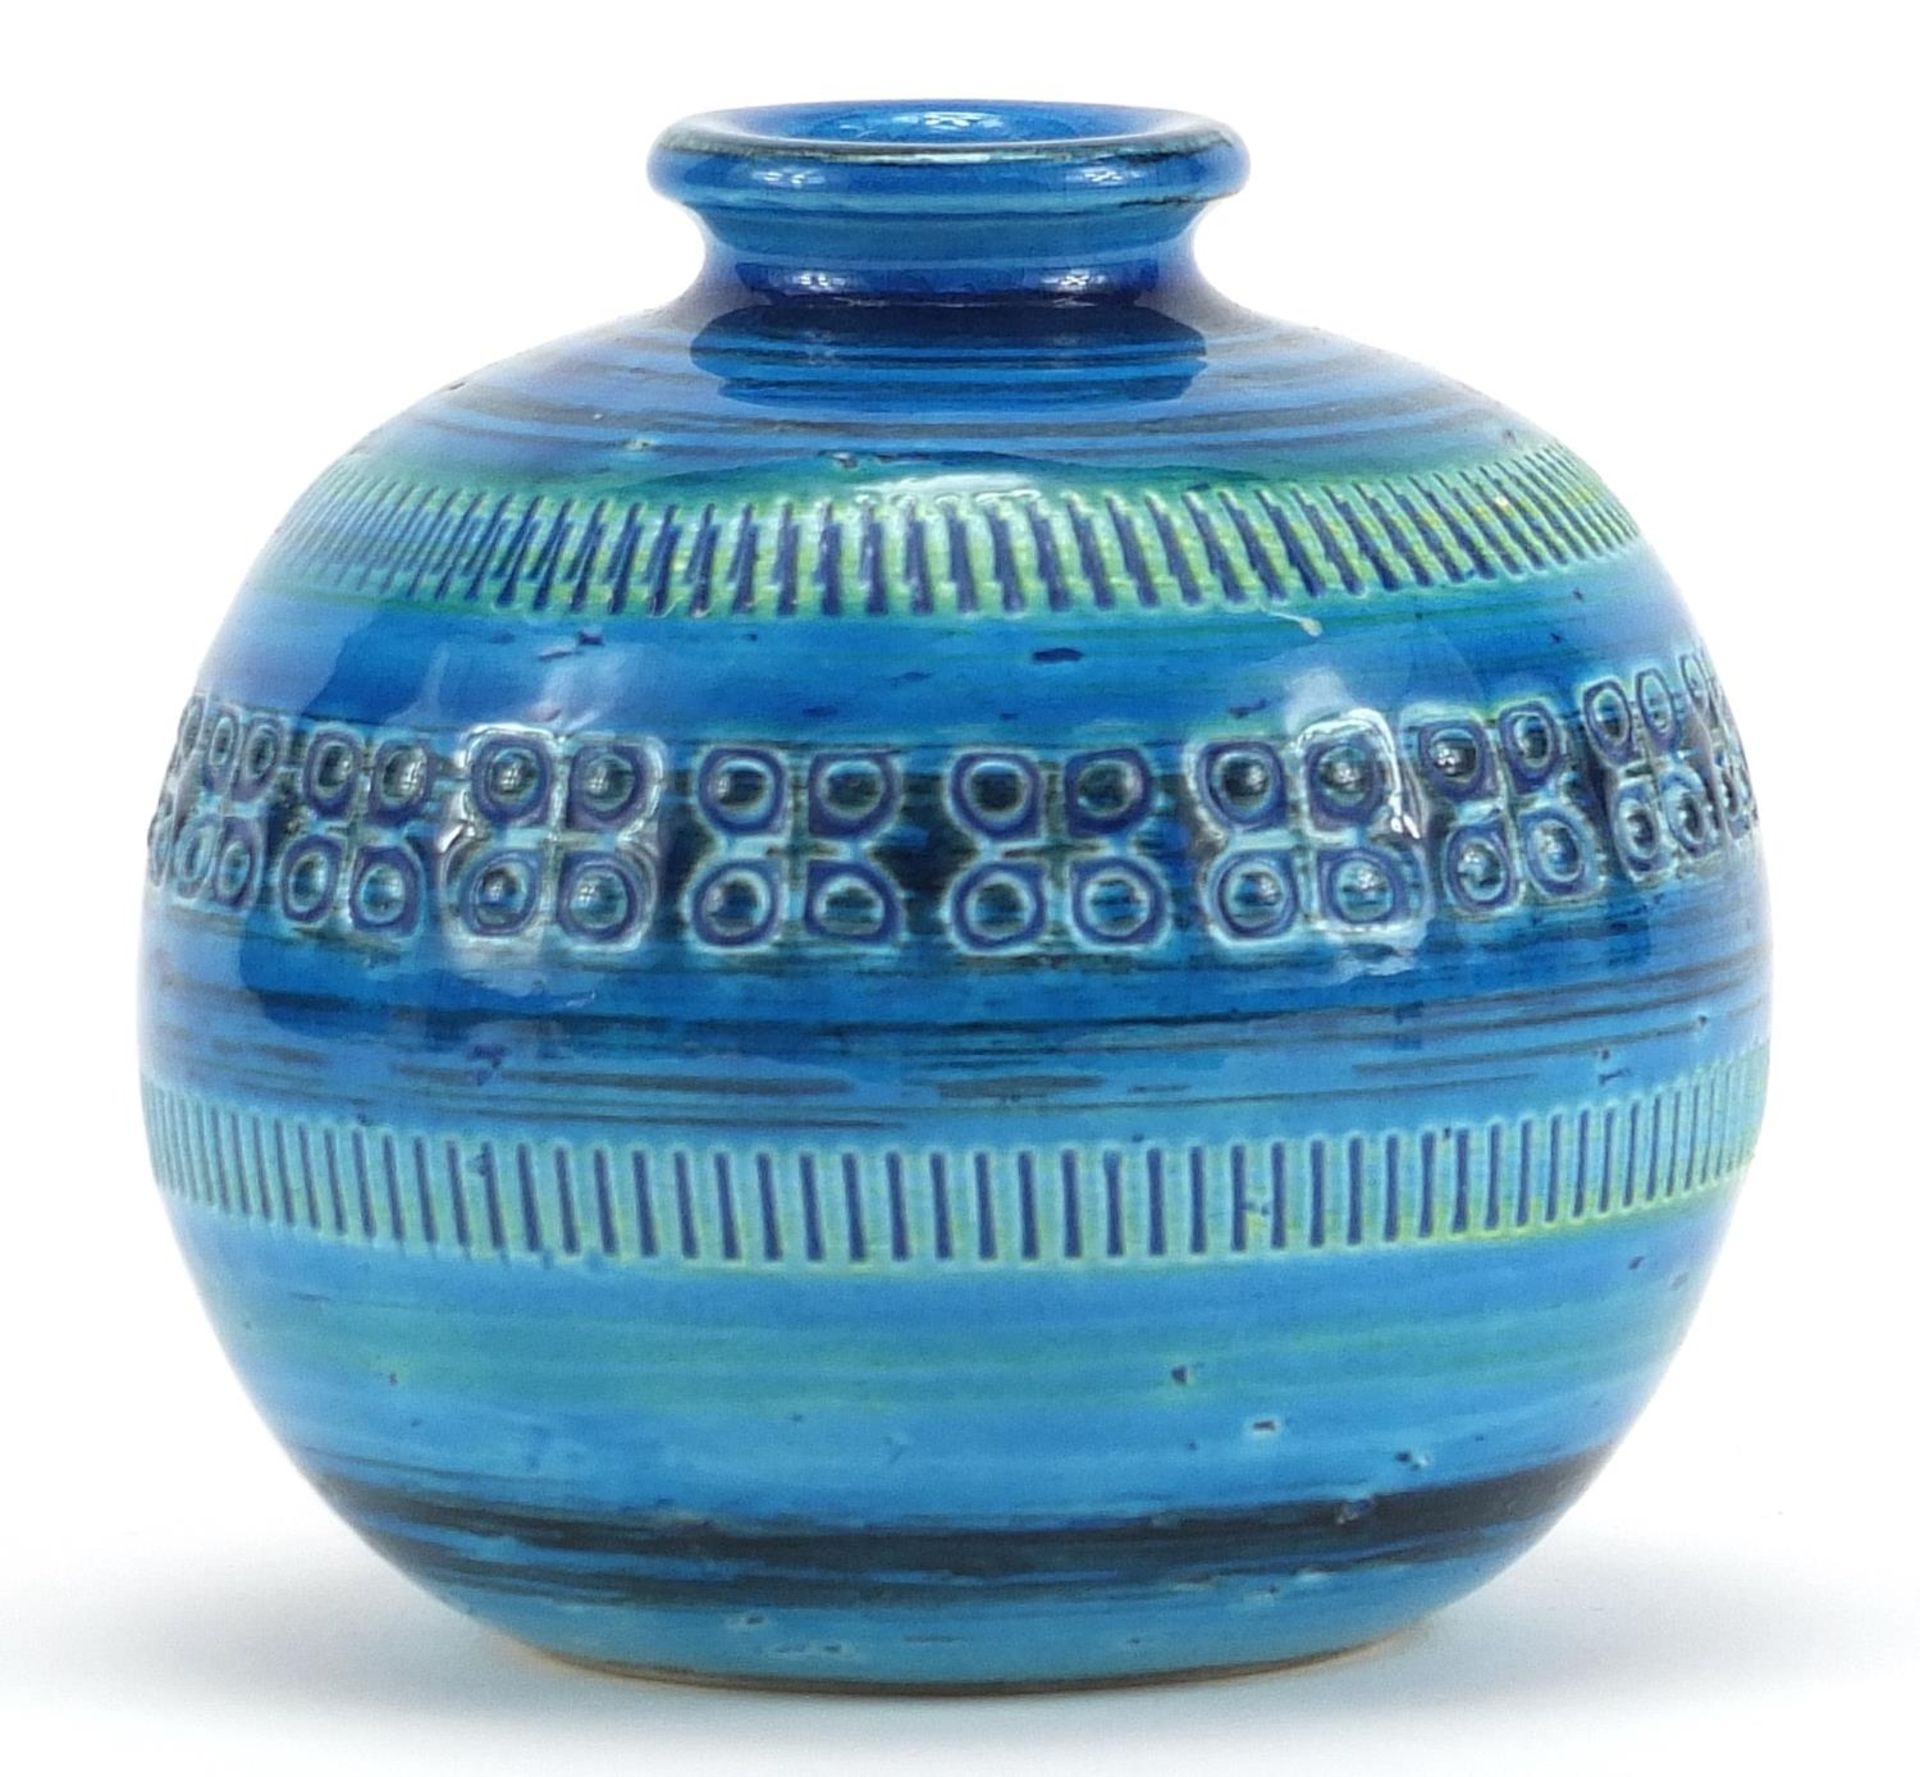 Bitossi, 1970s Italian globular vase, impressed marks to the base, 9.5cm high - Image 2 of 3